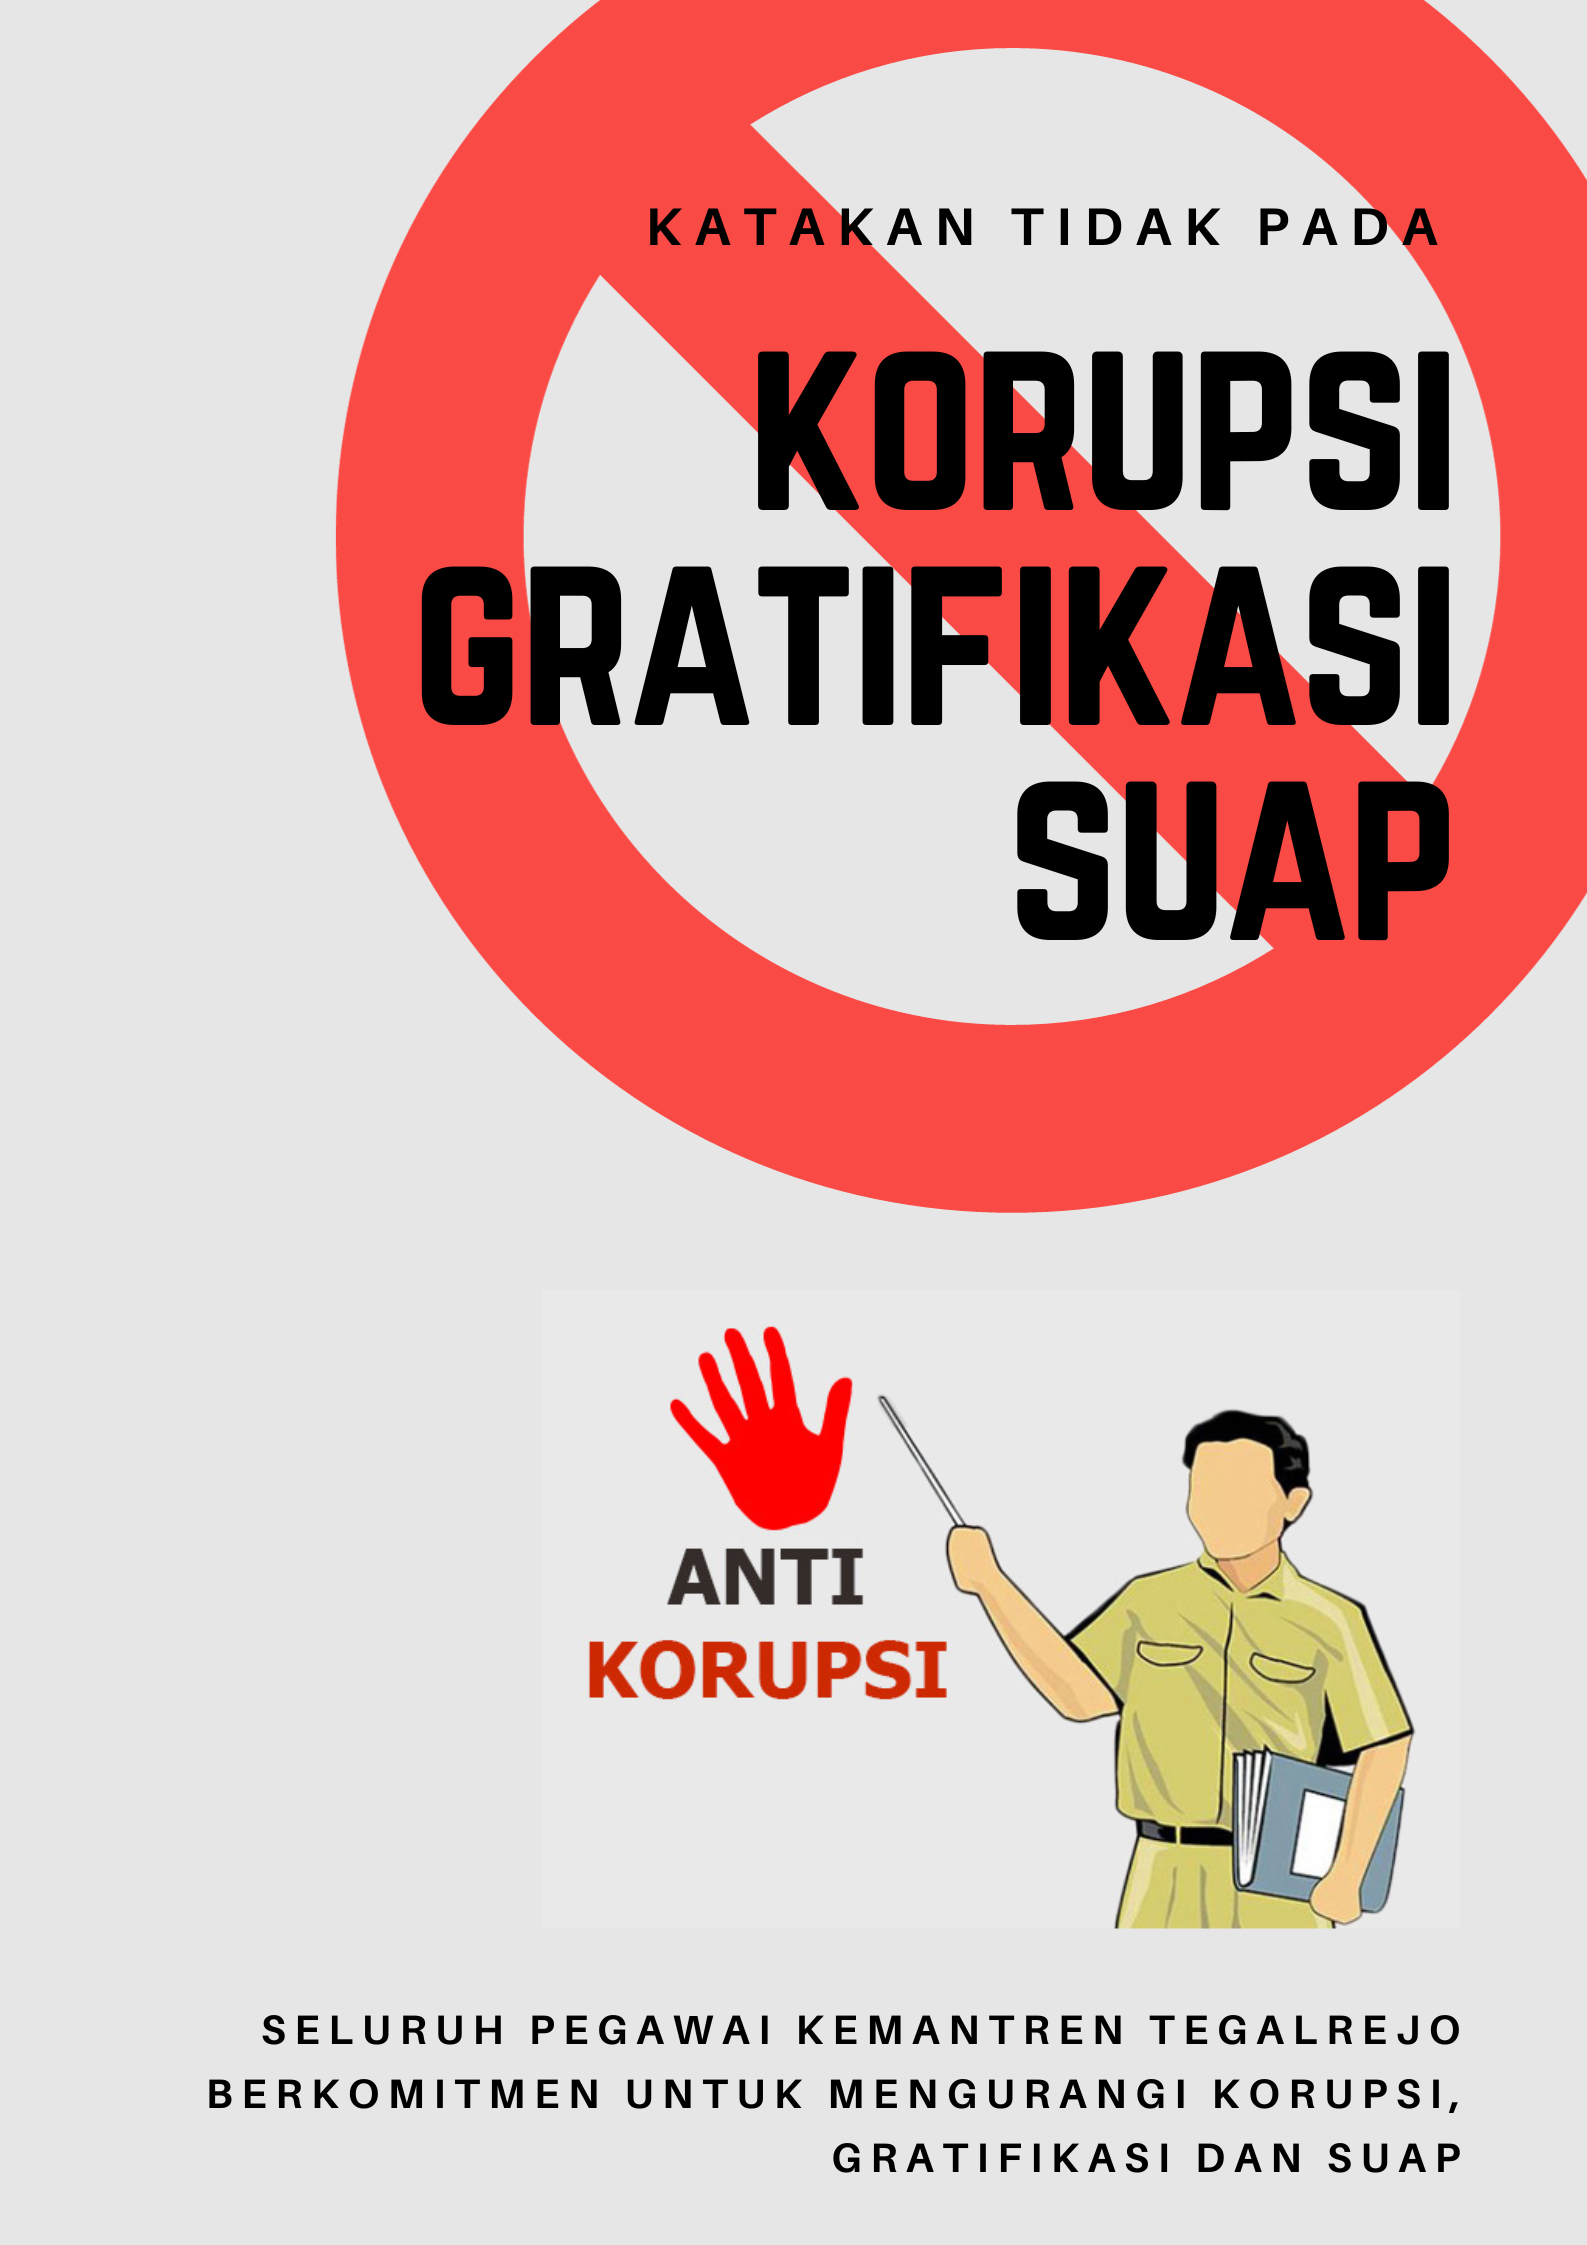 Stop Korupsi